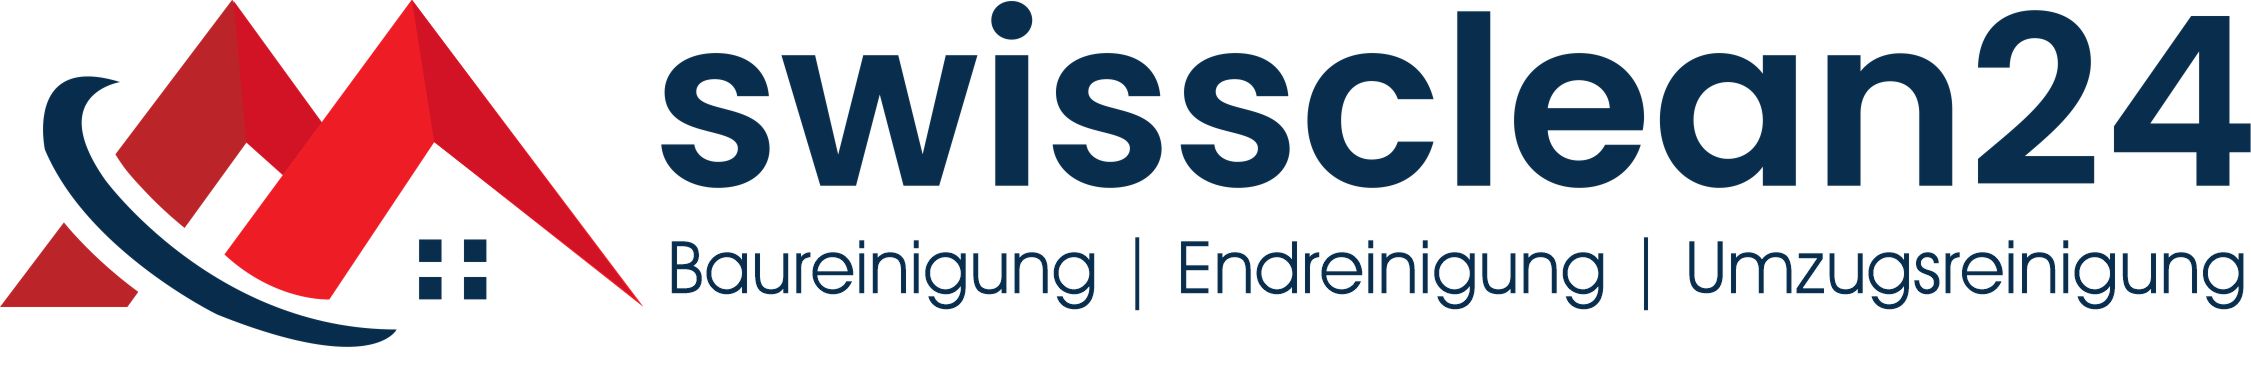 swissclean logo